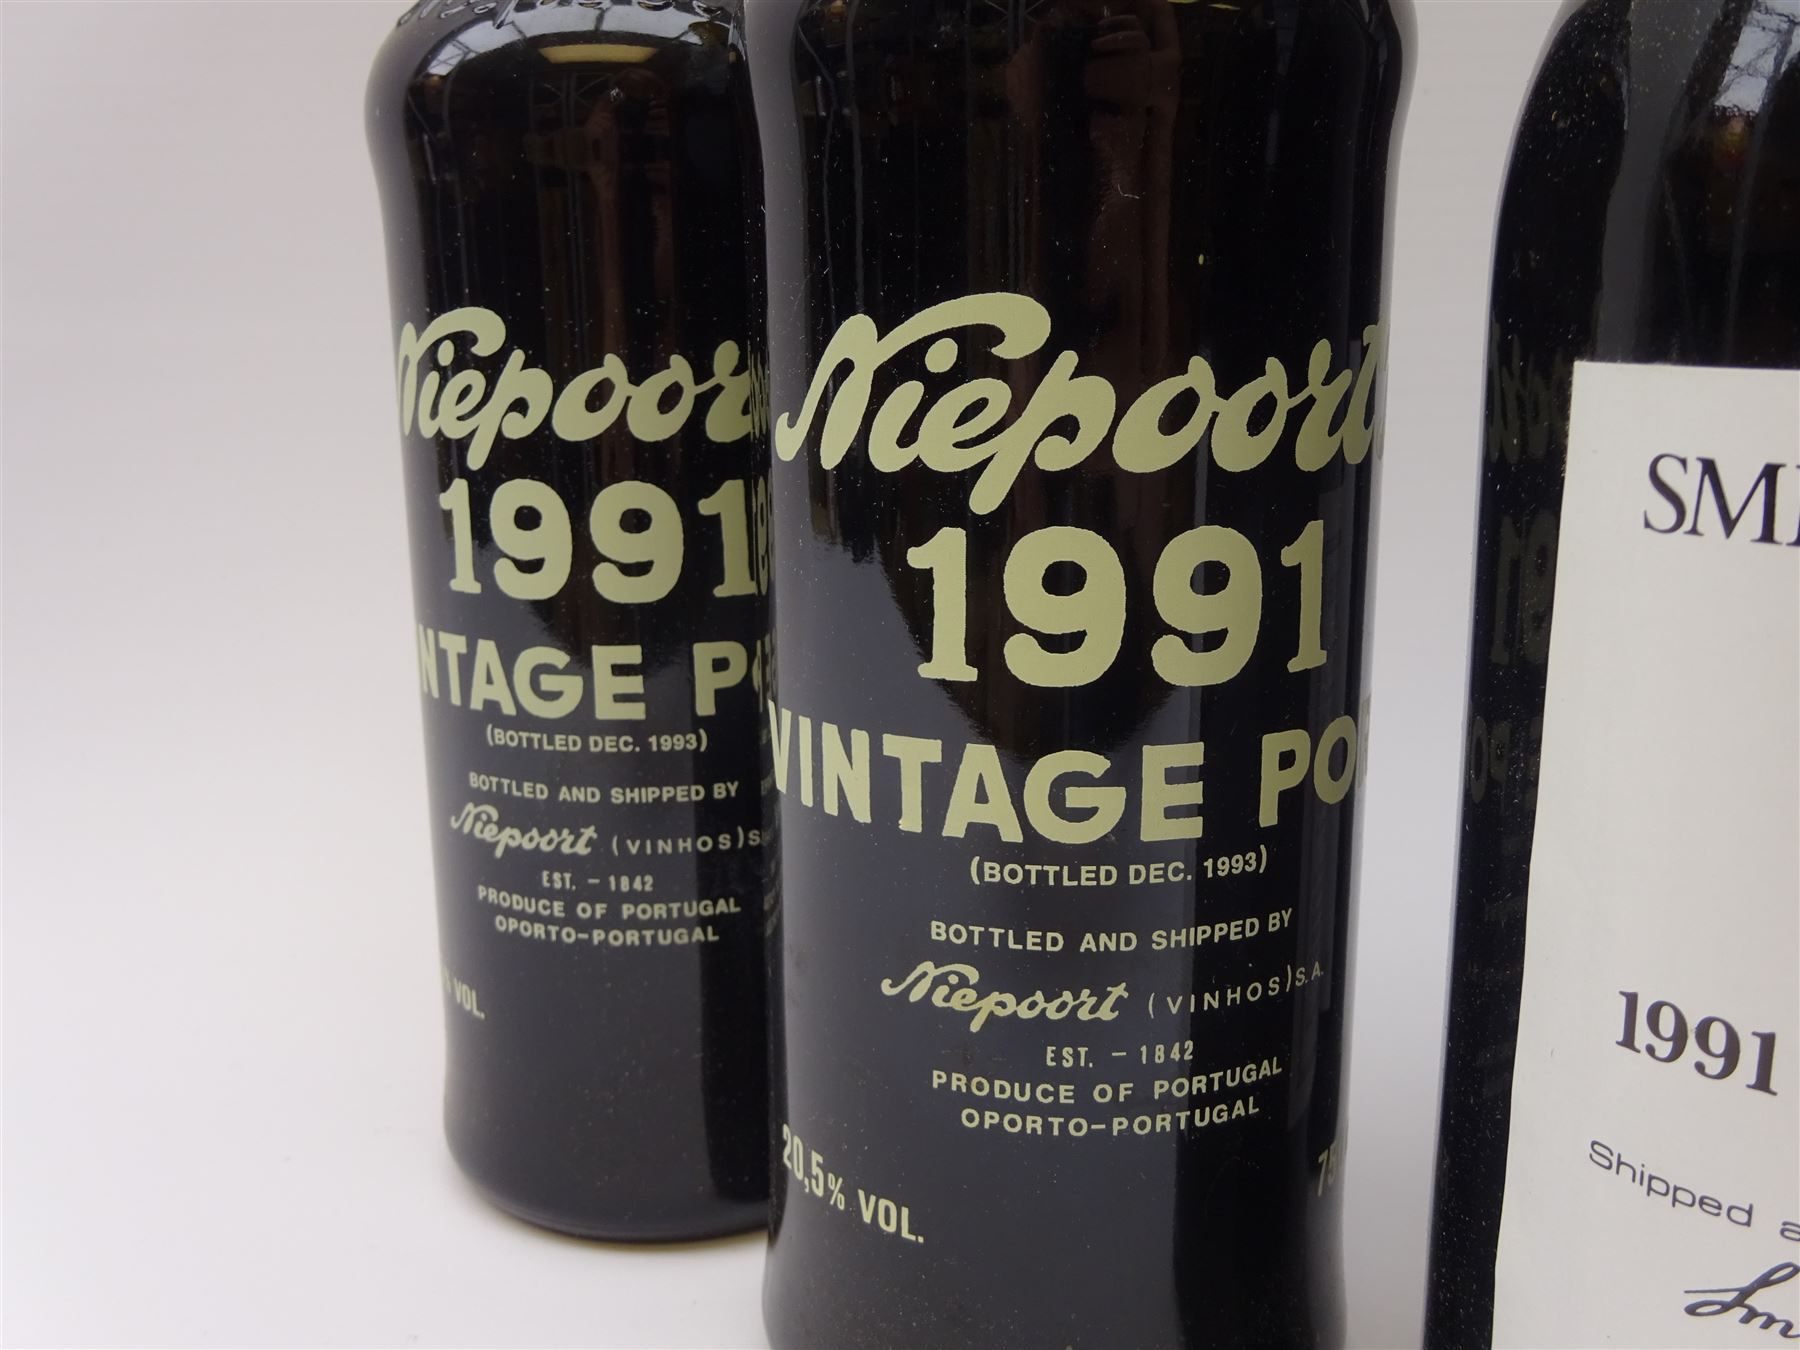 Vintage port including two bottles of Quinta Do Noval 1991 - Image 5 of 6